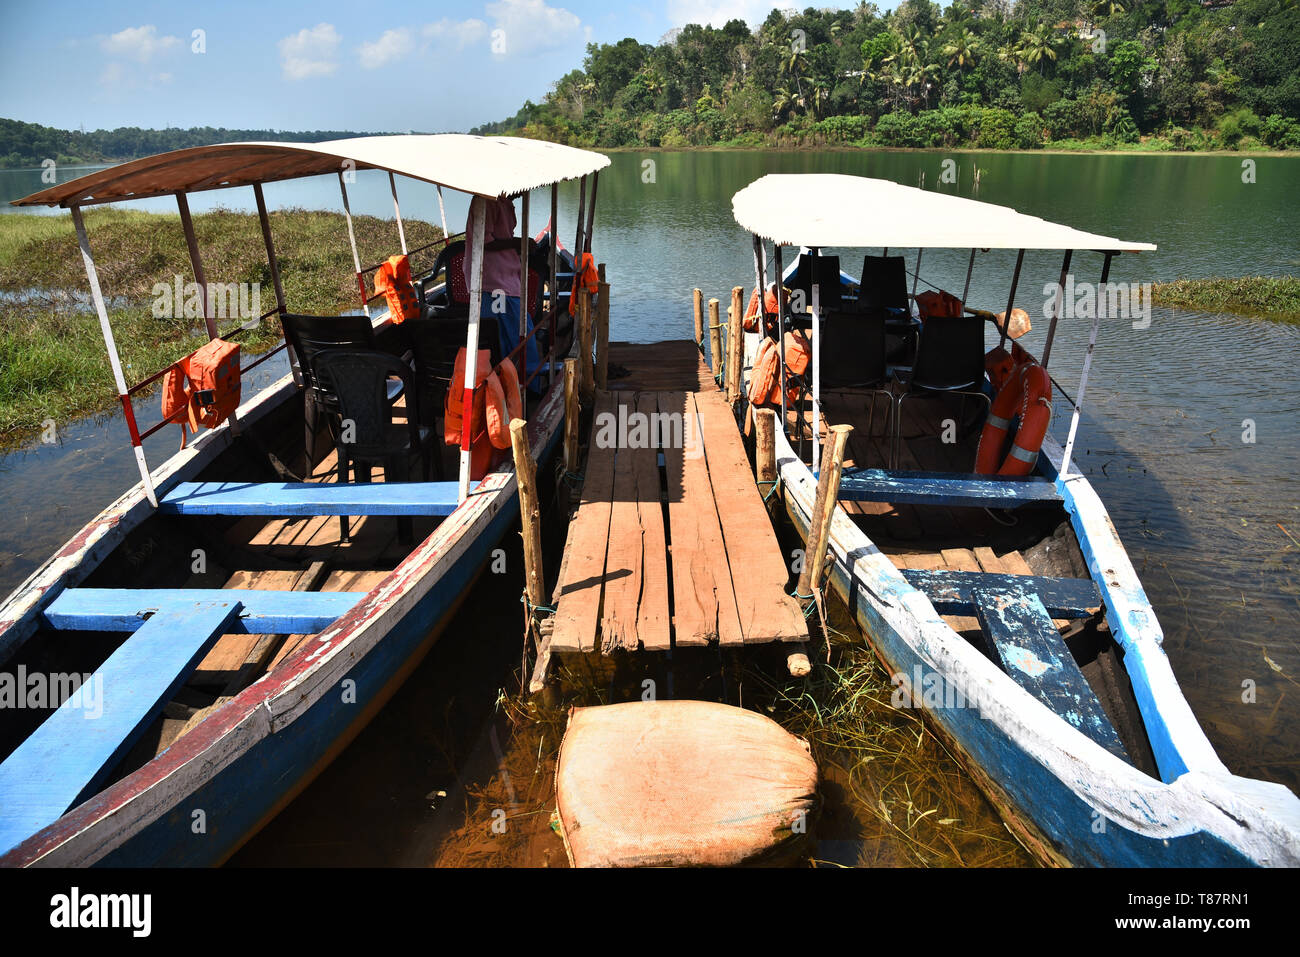 boats at sasthamkotta lake a freshwater lake in kerala,india Stock Photo